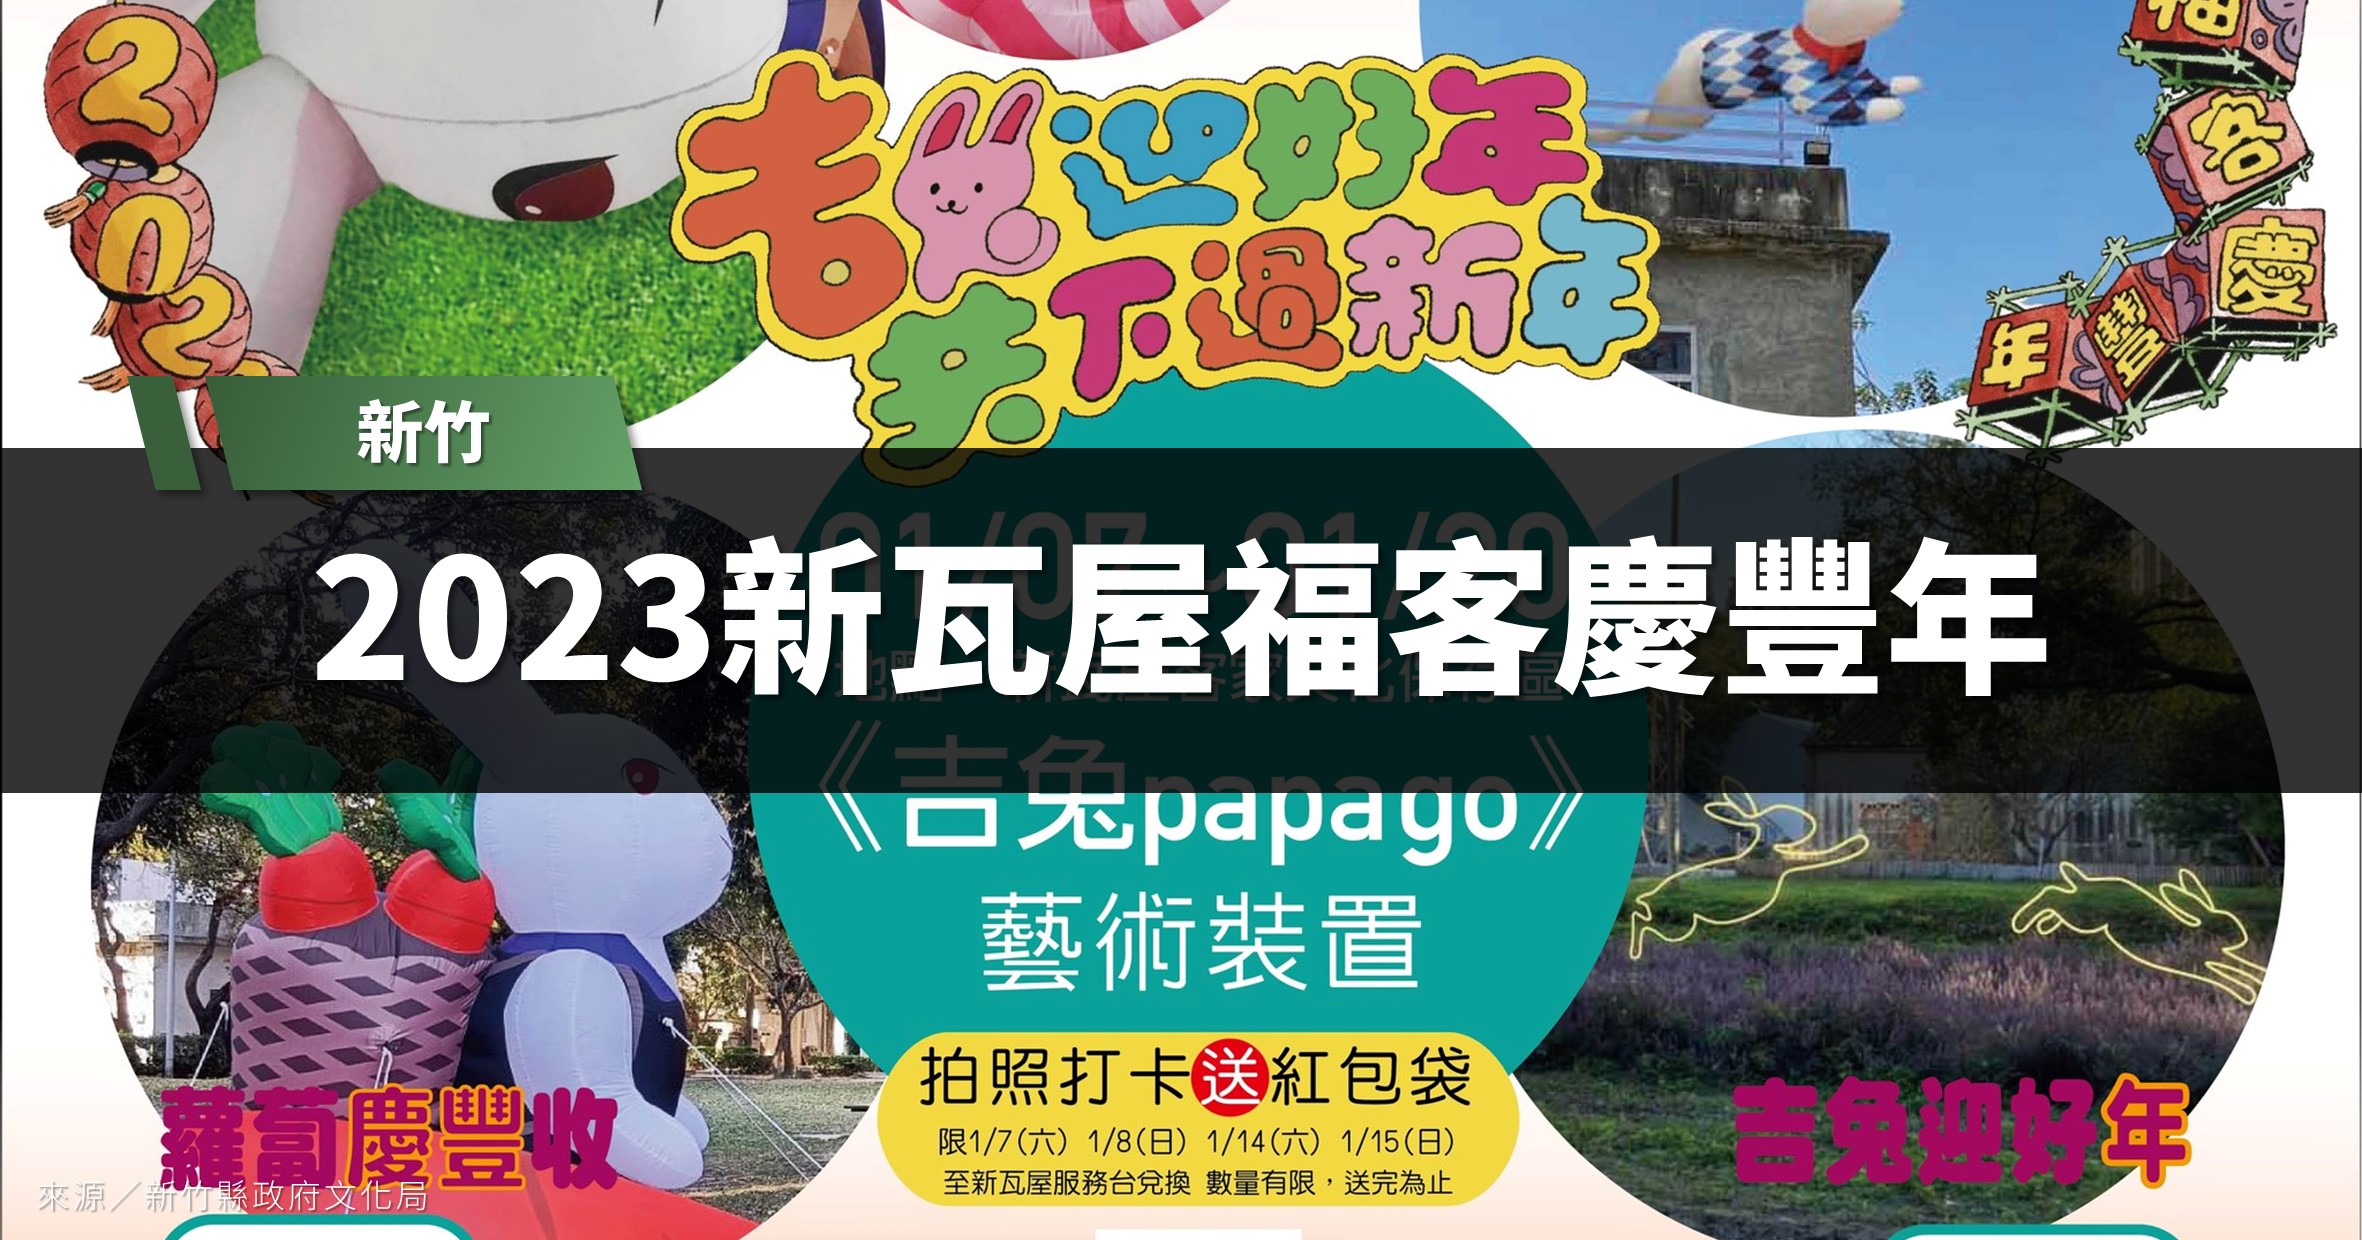 新竹活動》2023新瓦屋福客慶豐年「吉兔PAPA GO藝術裝置」 @漫步時光